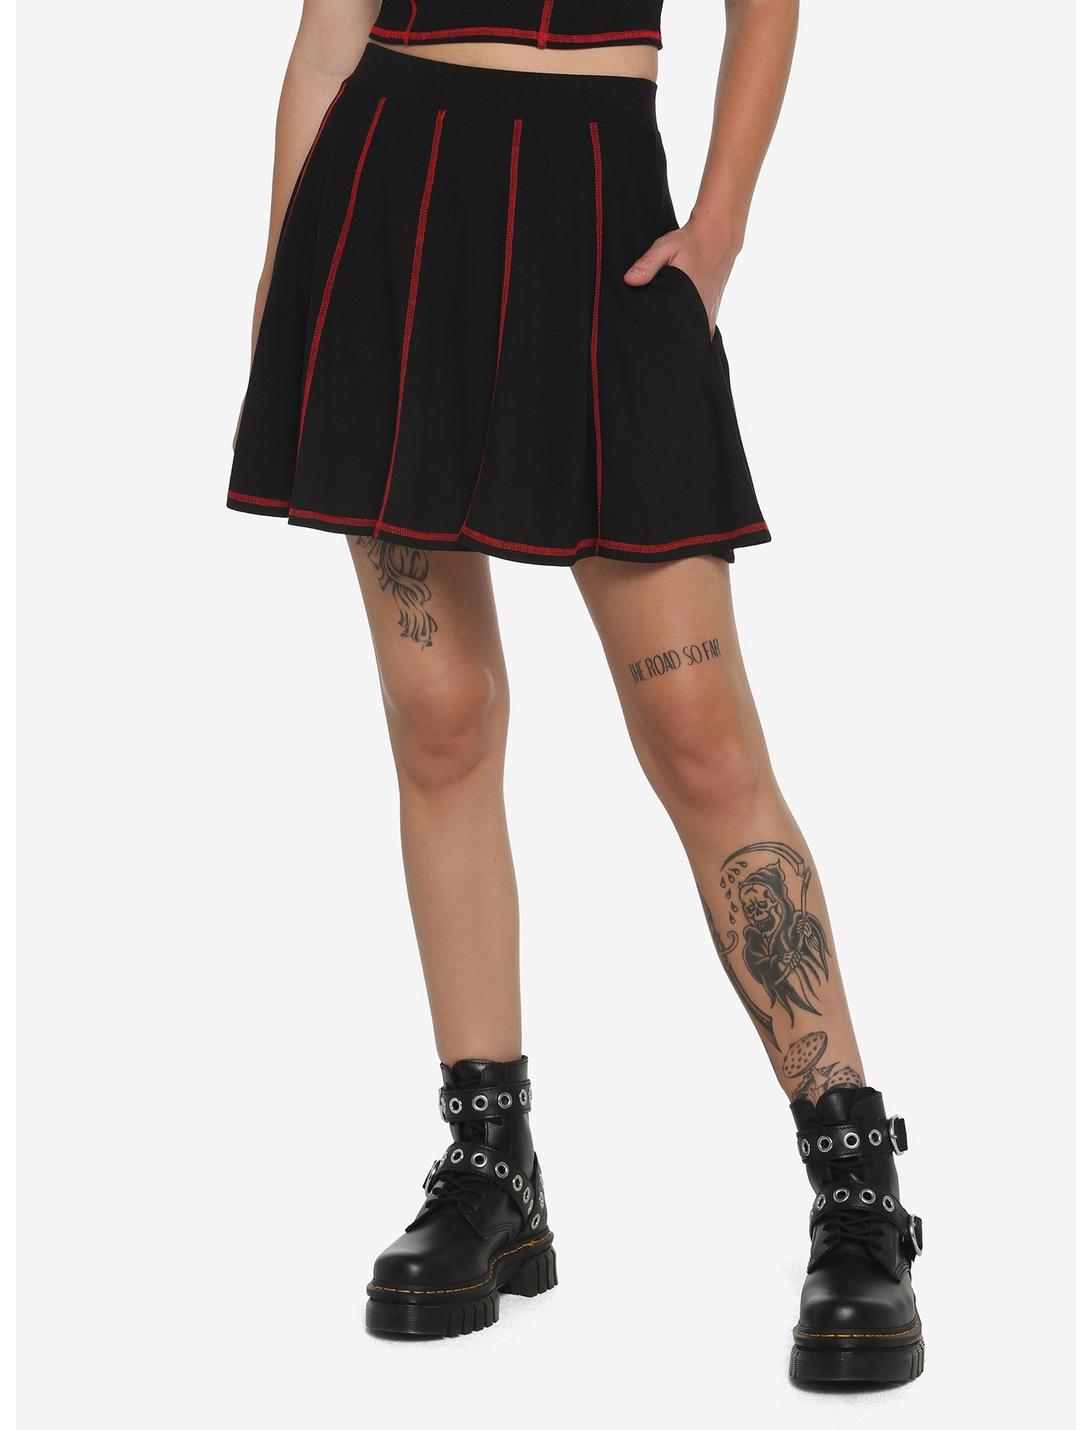 Black & Red Contrast Stitch Skirt, BLACK, hi-res